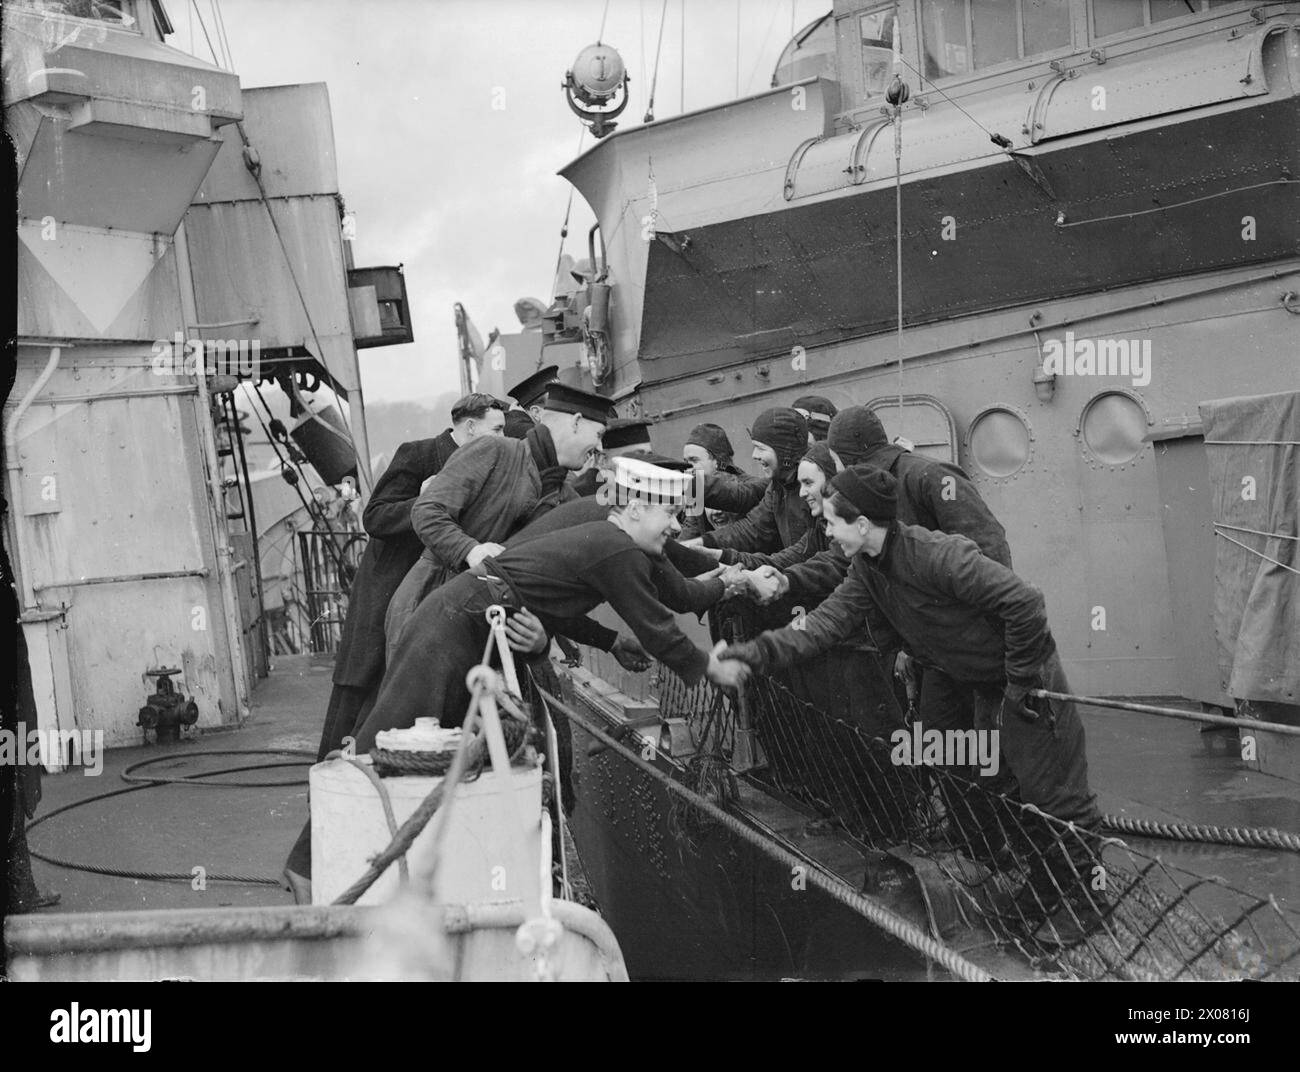 AMERICANS IN BRITAIN, 1942 - 1945 - The Londonderry Naval base : les marins britanniques et américains se saluent de leurs destroyers qui sont sécurisés à côté lorsque les premiers navires de guerre américains escortant un convoi à travers l'Atlantique sont arrivés à Londonderry, janvier-février 1942 Royal Navy, United States Navy Banque D'Images